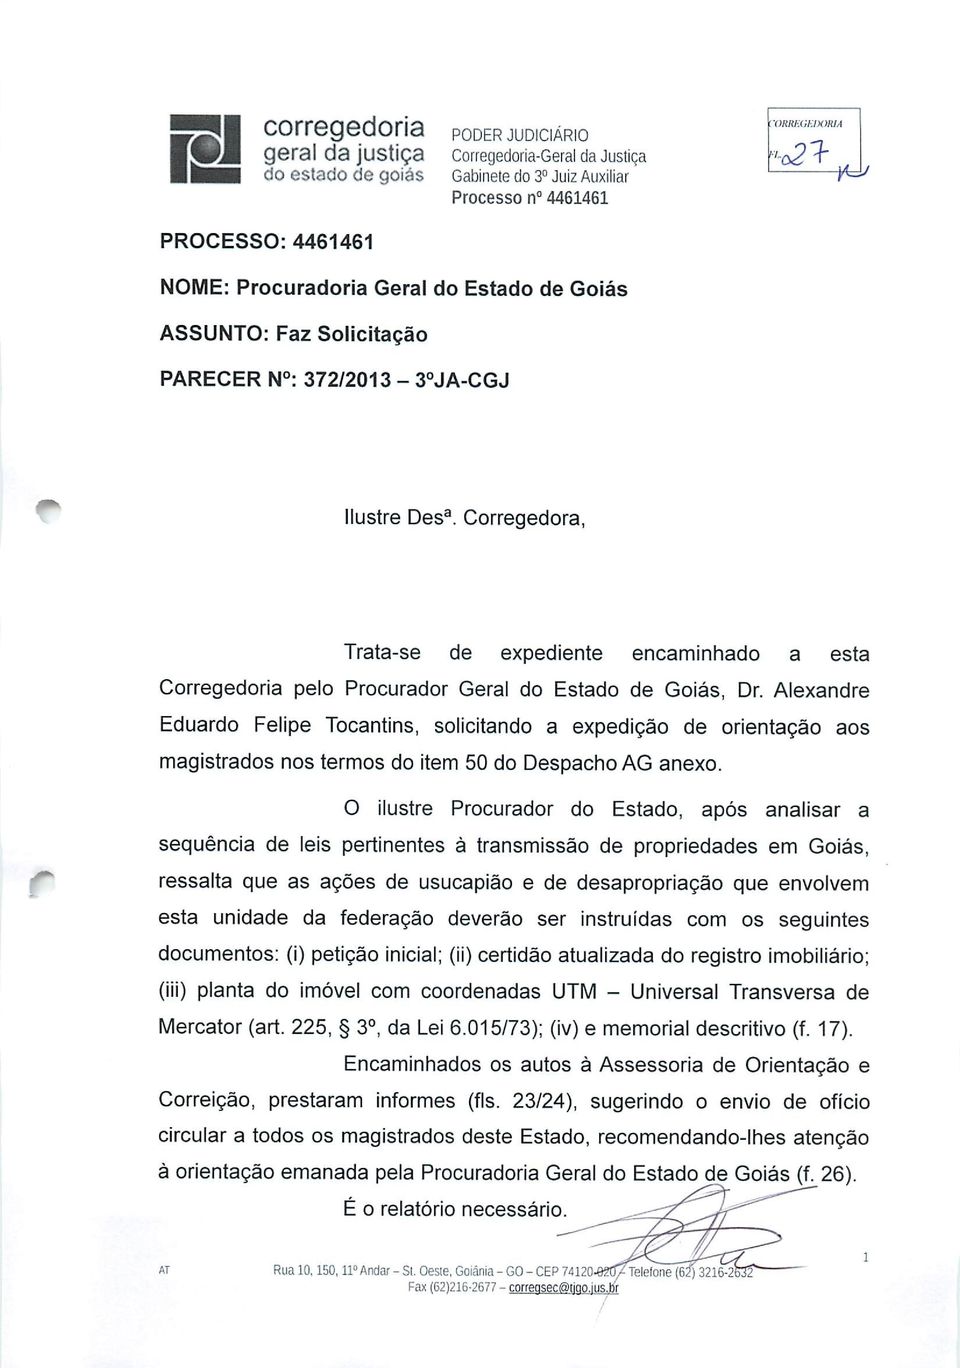 Alexandre Eduardo Felipe Tocantins, solicitando a expedição de orientação aos magistrados nos termos do item 50 do Despacho AG anexo.